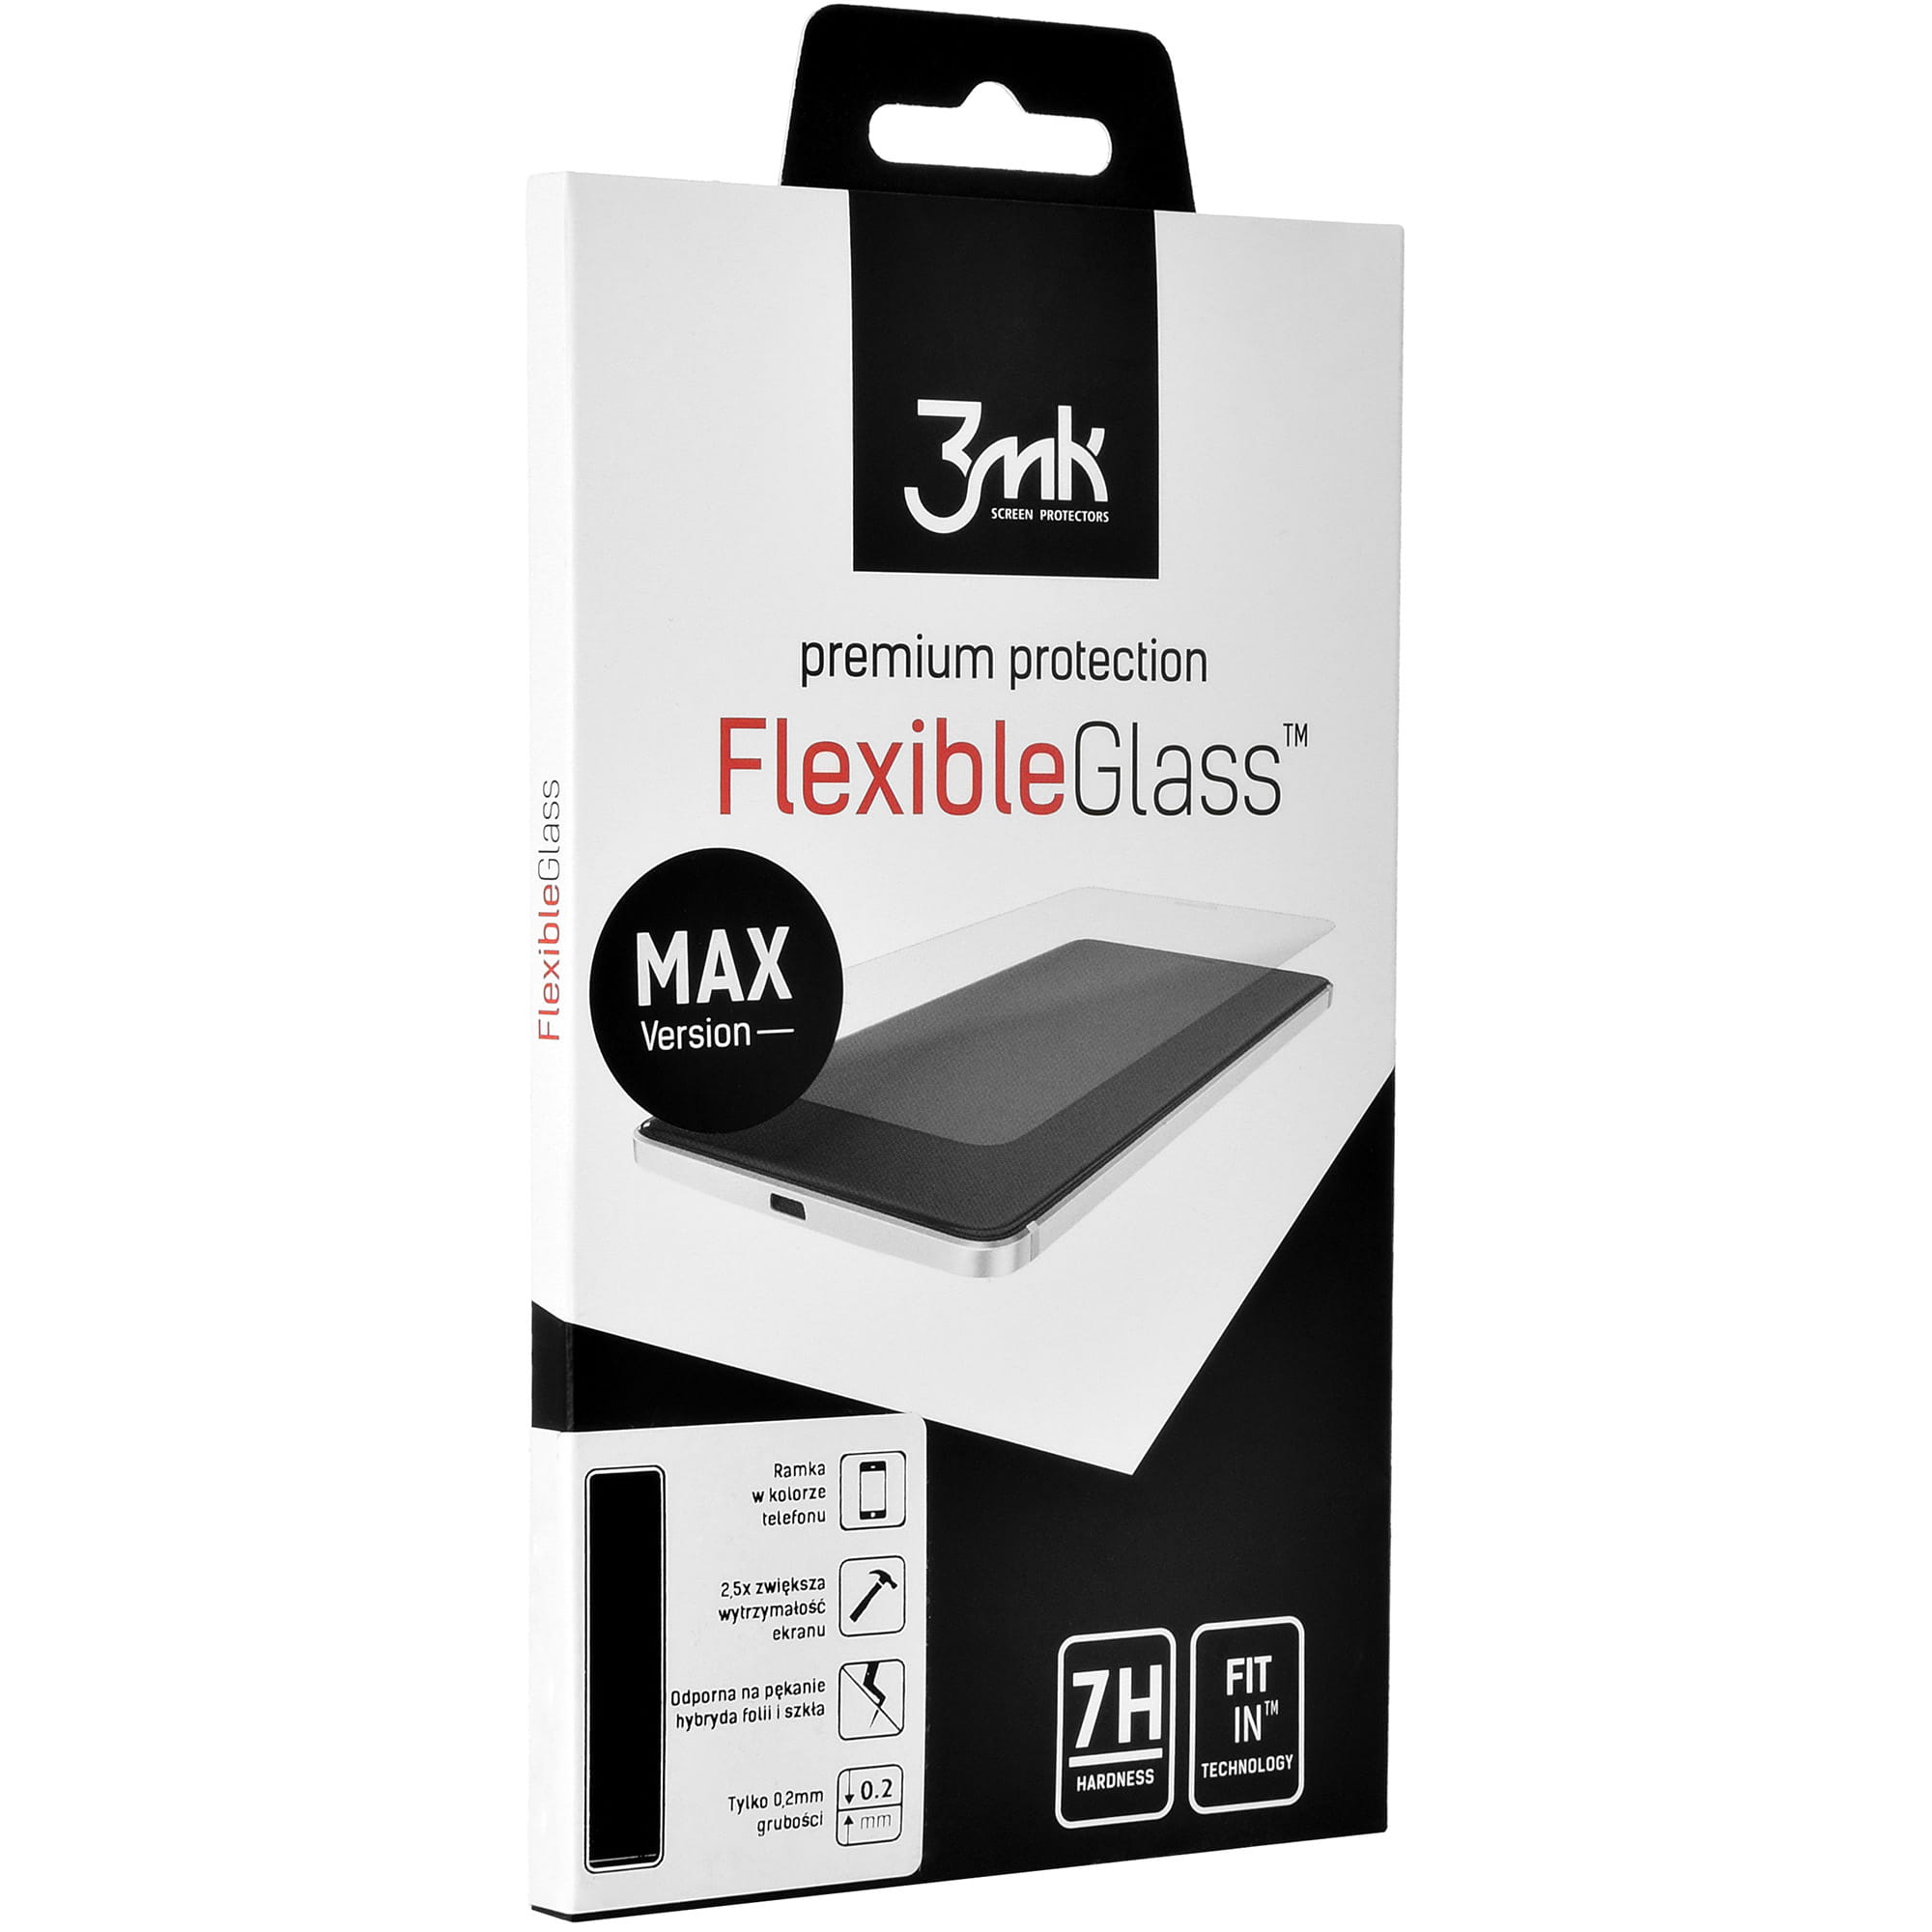 Hybridglas 3mk Flexible Glass Max für iPhone 7 / 8 schwarzer Rahmen